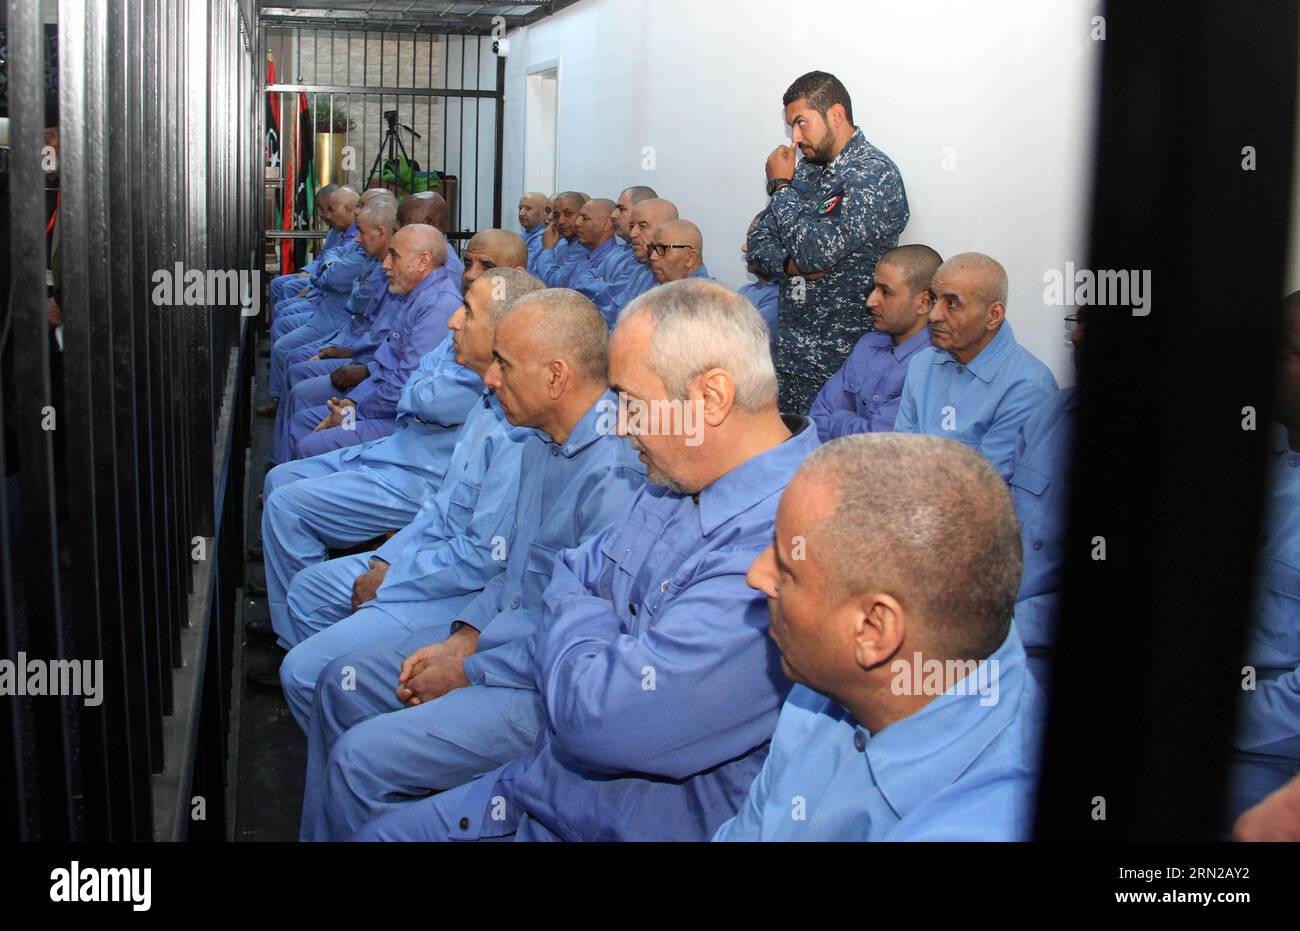 (150222) -- TRIPOLI, 22. Februar 2015 -- ehemalige libysche Regierungsbeamte werden am 22. Februar 2015 vor Gericht in Tripoli, der Hauptstadt Libyens, gesehen. Das Gericht setzte am Sonntag den Prozess gegen Dutzende hochrangiger Beamter der Regierung des ehemaligen libyschen Führers Muammar Gaddafi fort. ) LIBYEN-TRIPOLI-EHEMALIGE BEAMTE-PROZESS HamzaxTurkia PUBLICATIONxNOTxINxCHN Tripoli 22. Februar 2015 ehemalige libysche Regierungsbeamte sind Seen vor Gericht in Tripoli Hauptstadt von Libyen AM 22. Februar 2015 das Gericht setzte AM Sonntag die Verhandlung von Dutzenden von hochrangigen Beamten des ehemaligen libyschen Führers Muammar Gaddafi S Regierung Libyen Tripoli ehemaligen fort Stockfoto